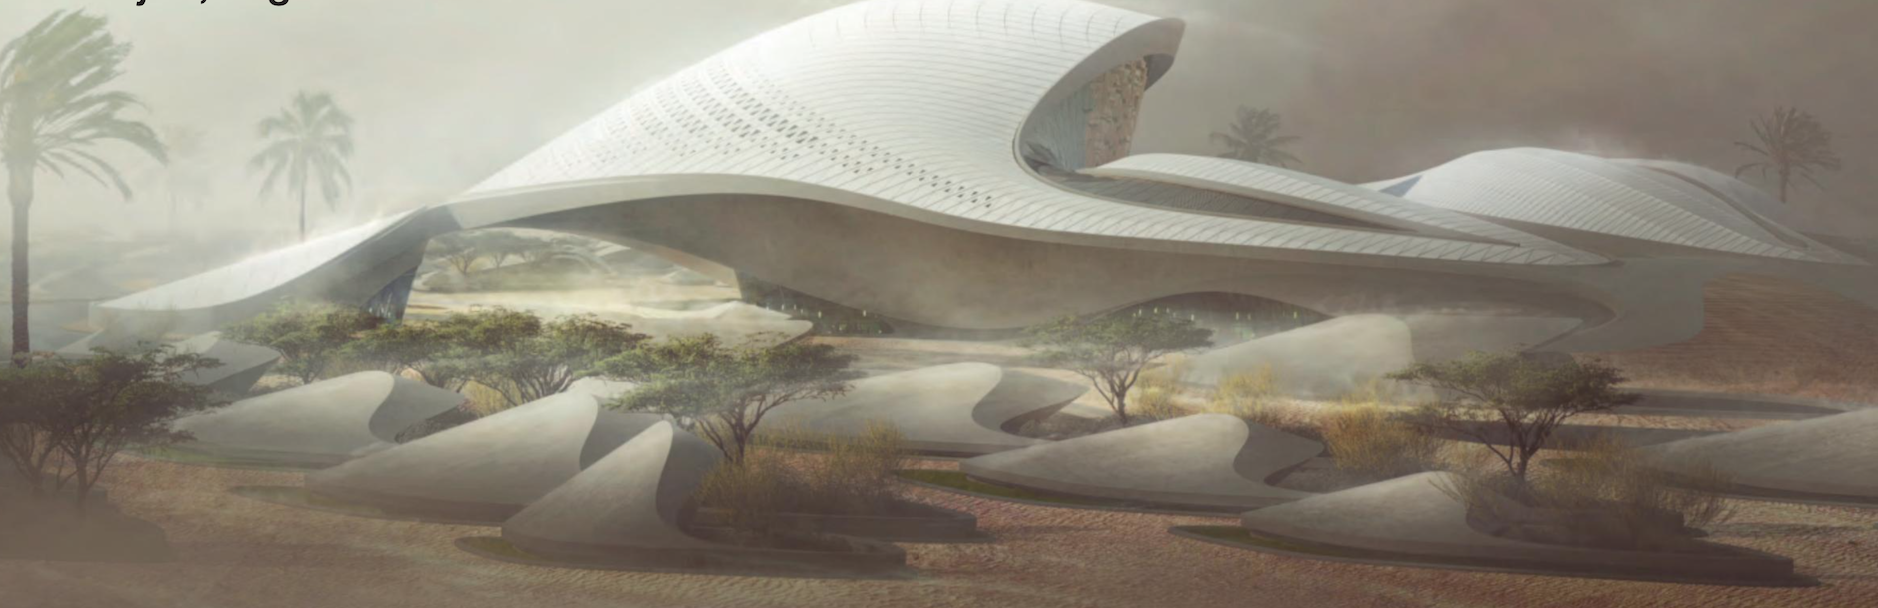 Scopri su POSH l’esclusivo progetto Zaha Hadid Architects in Medio Oriente